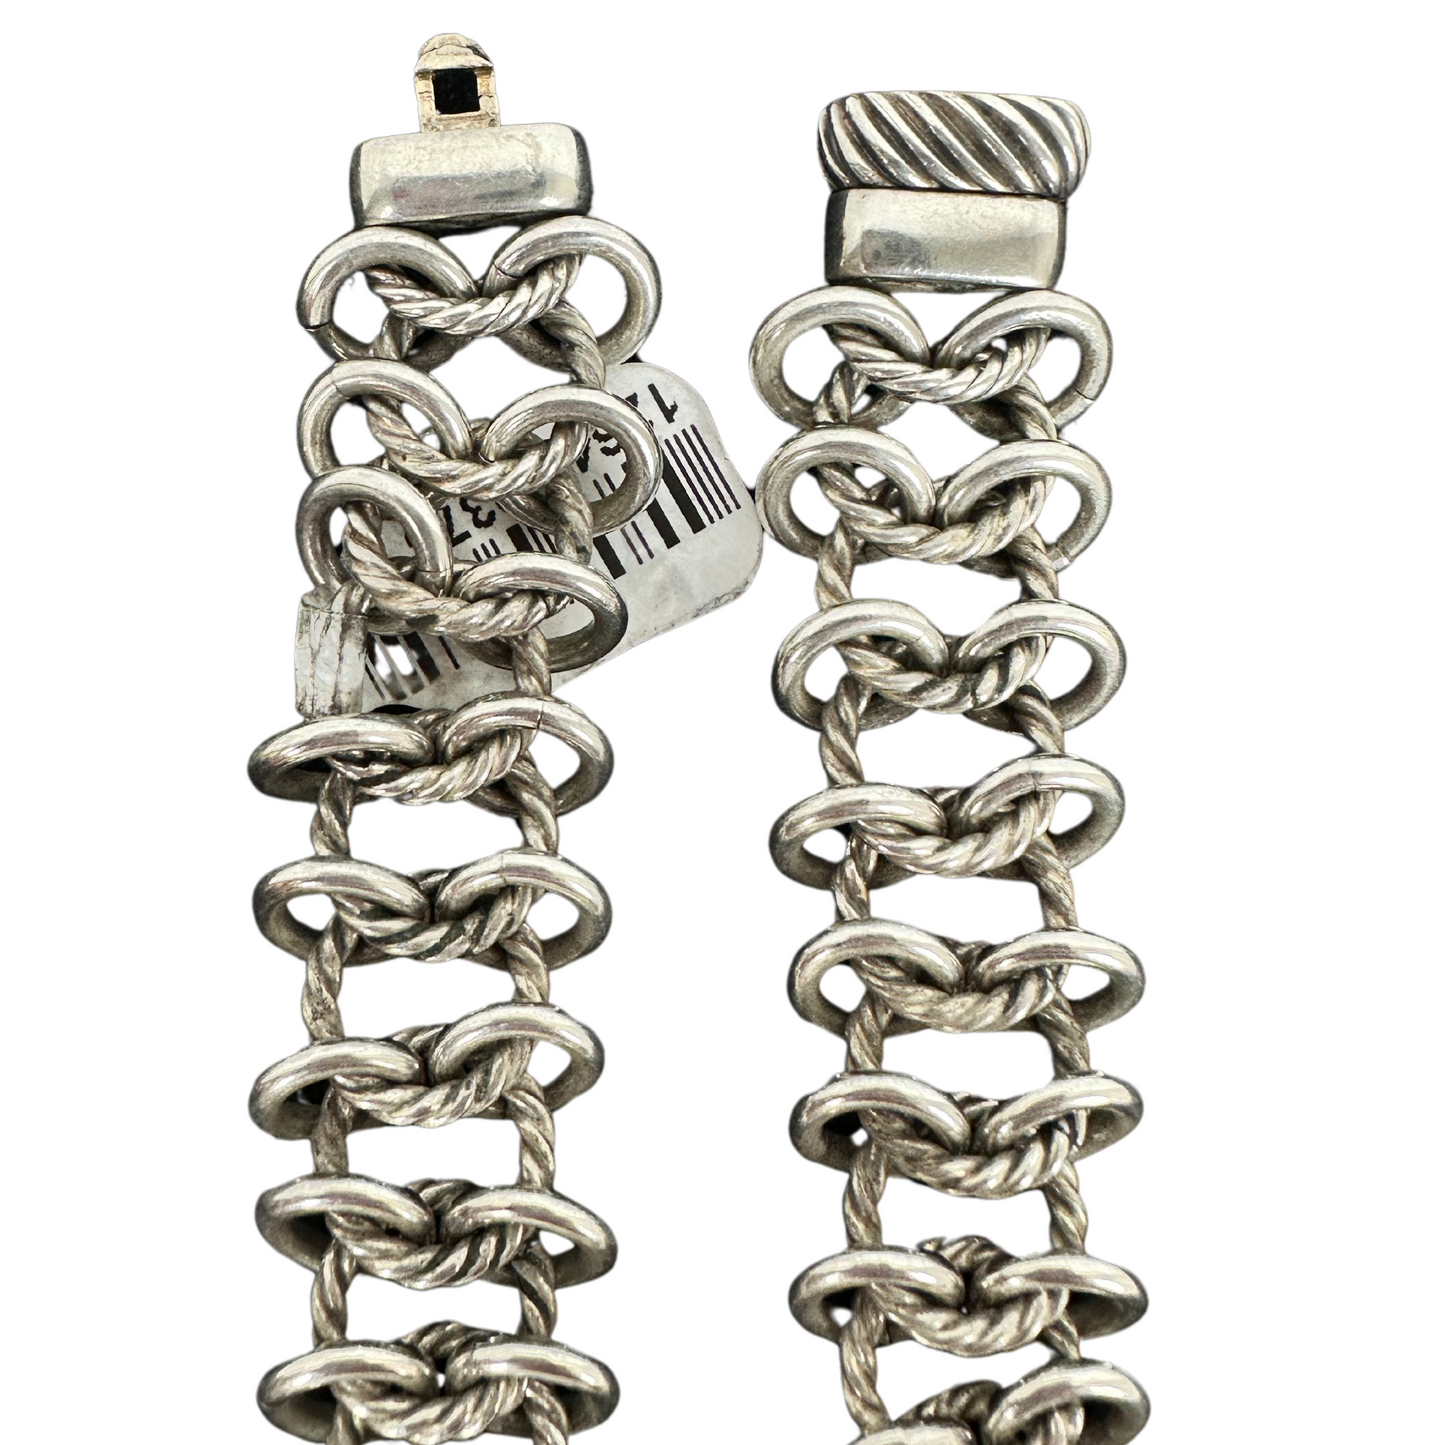 DAVID YURMAN Silver Chain Necklace